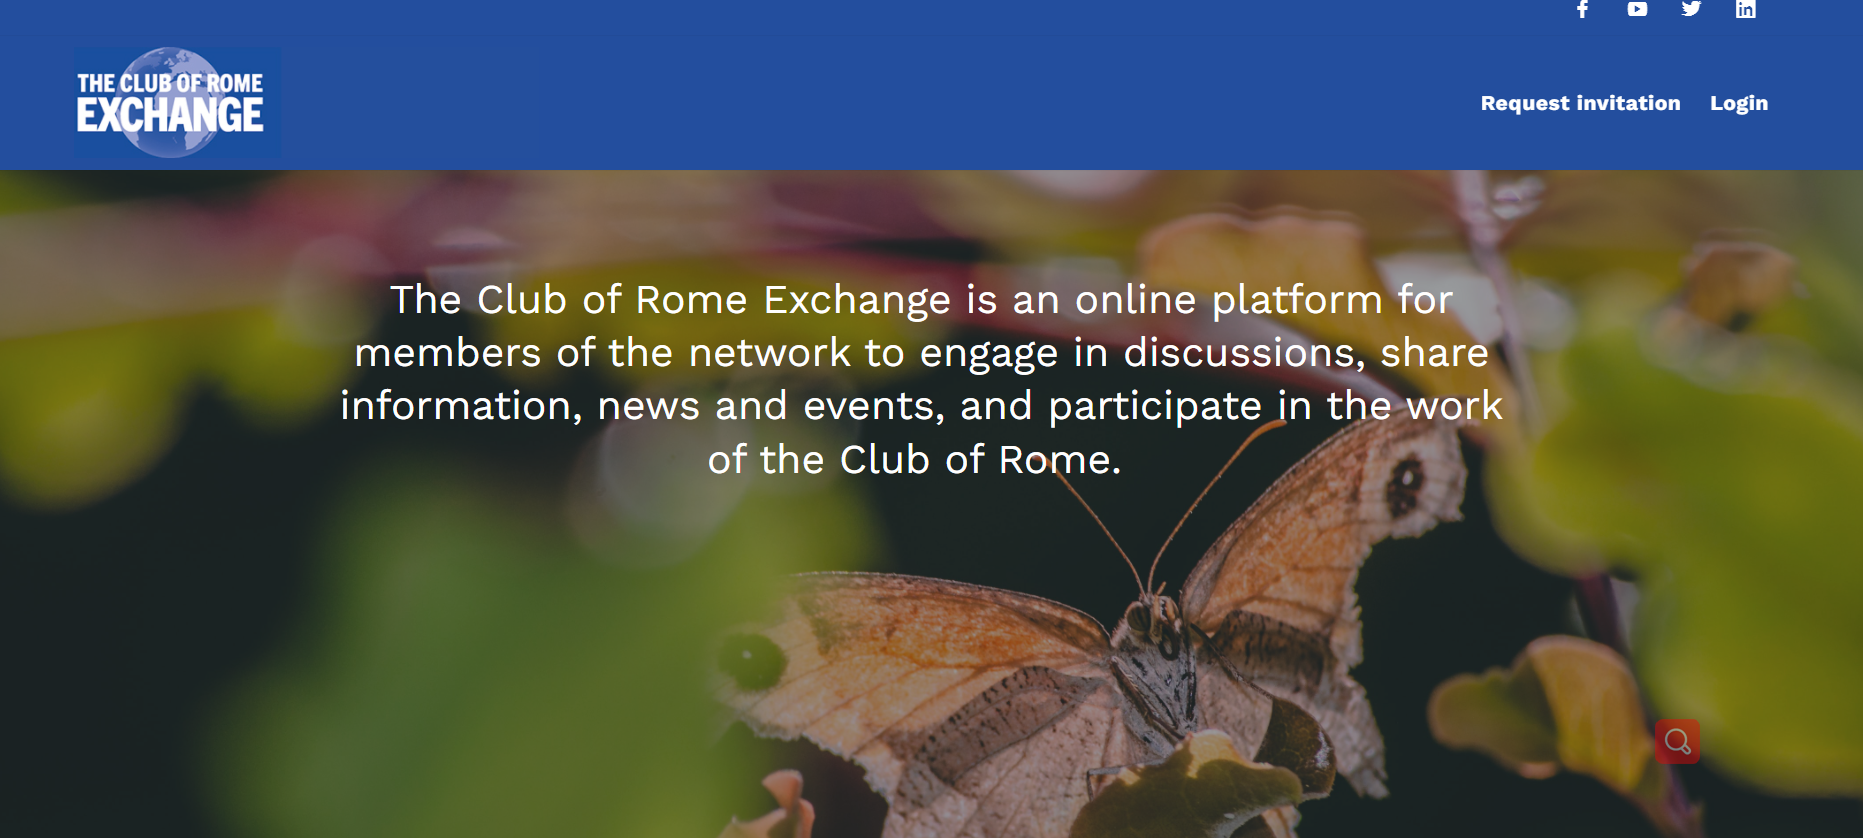 罗马俱乐部推出新网络平台——The Club of Rome Exchange.png